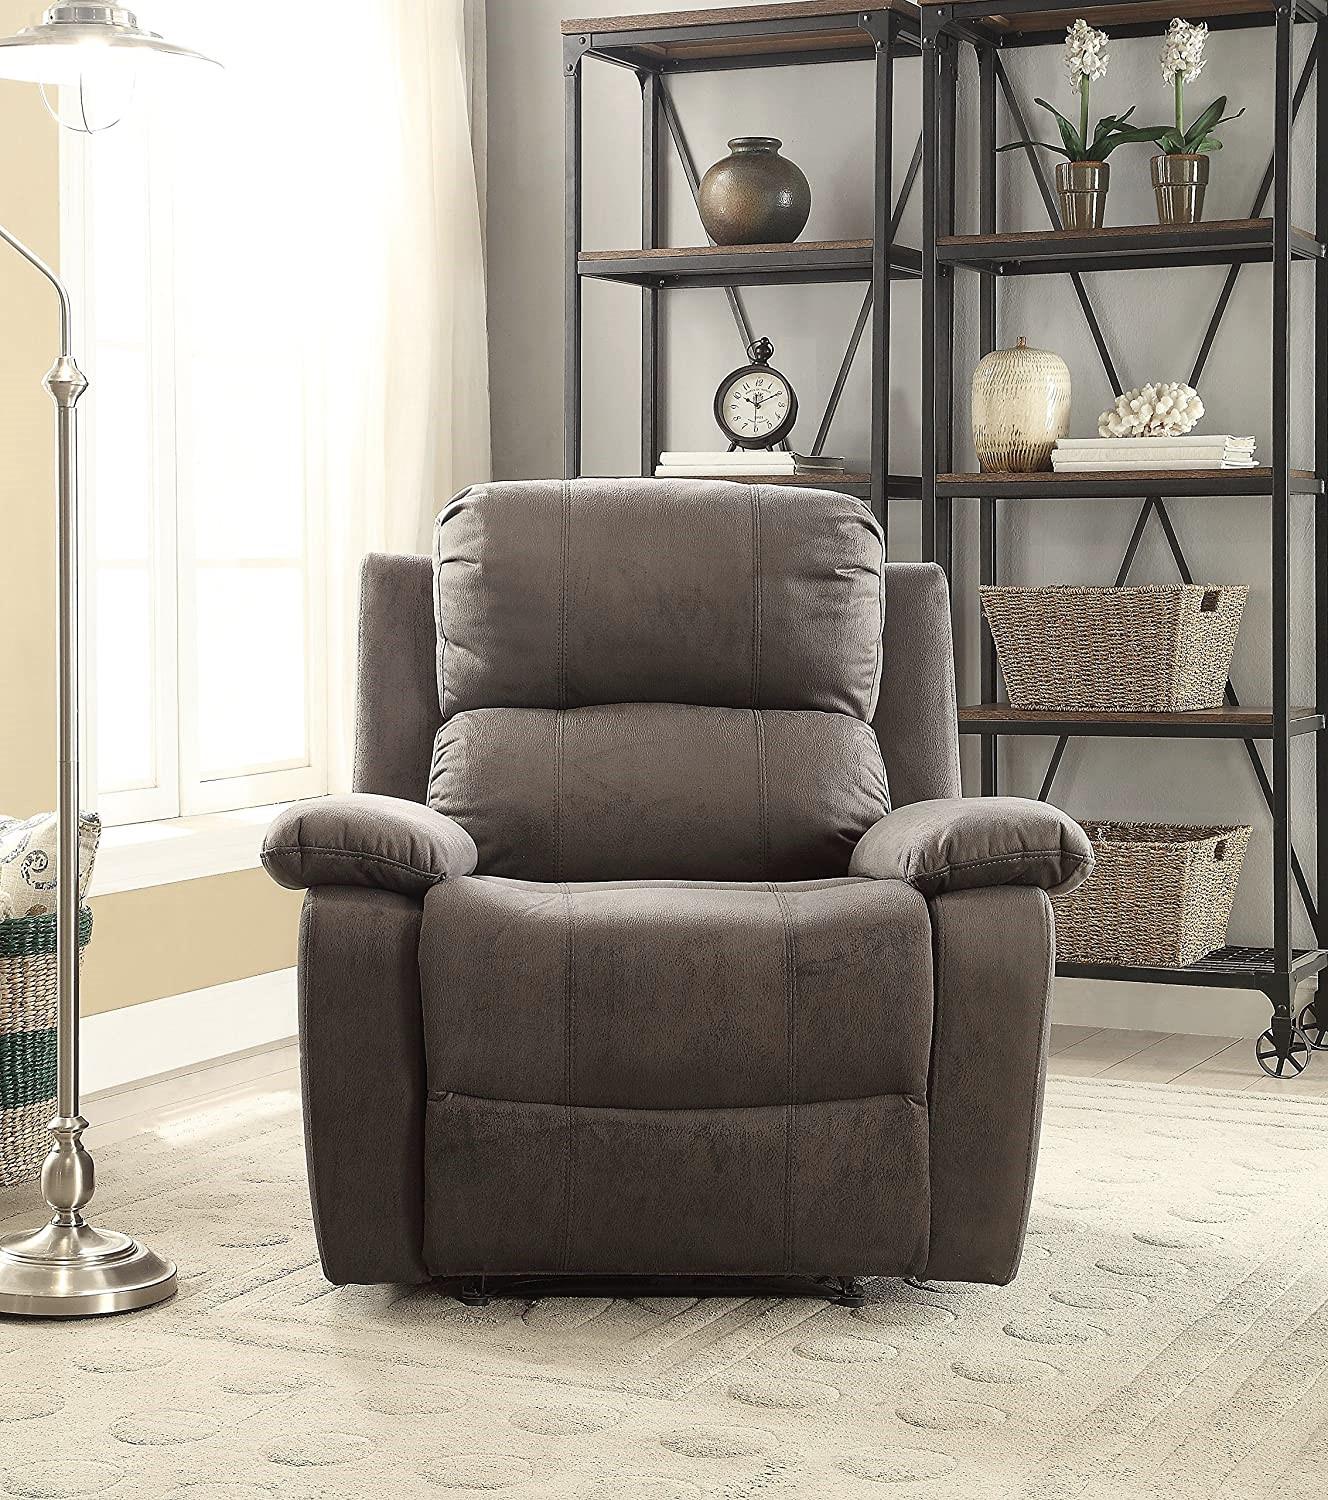 

    
Acme Furniture Bina Recliner Charcoal 59525
